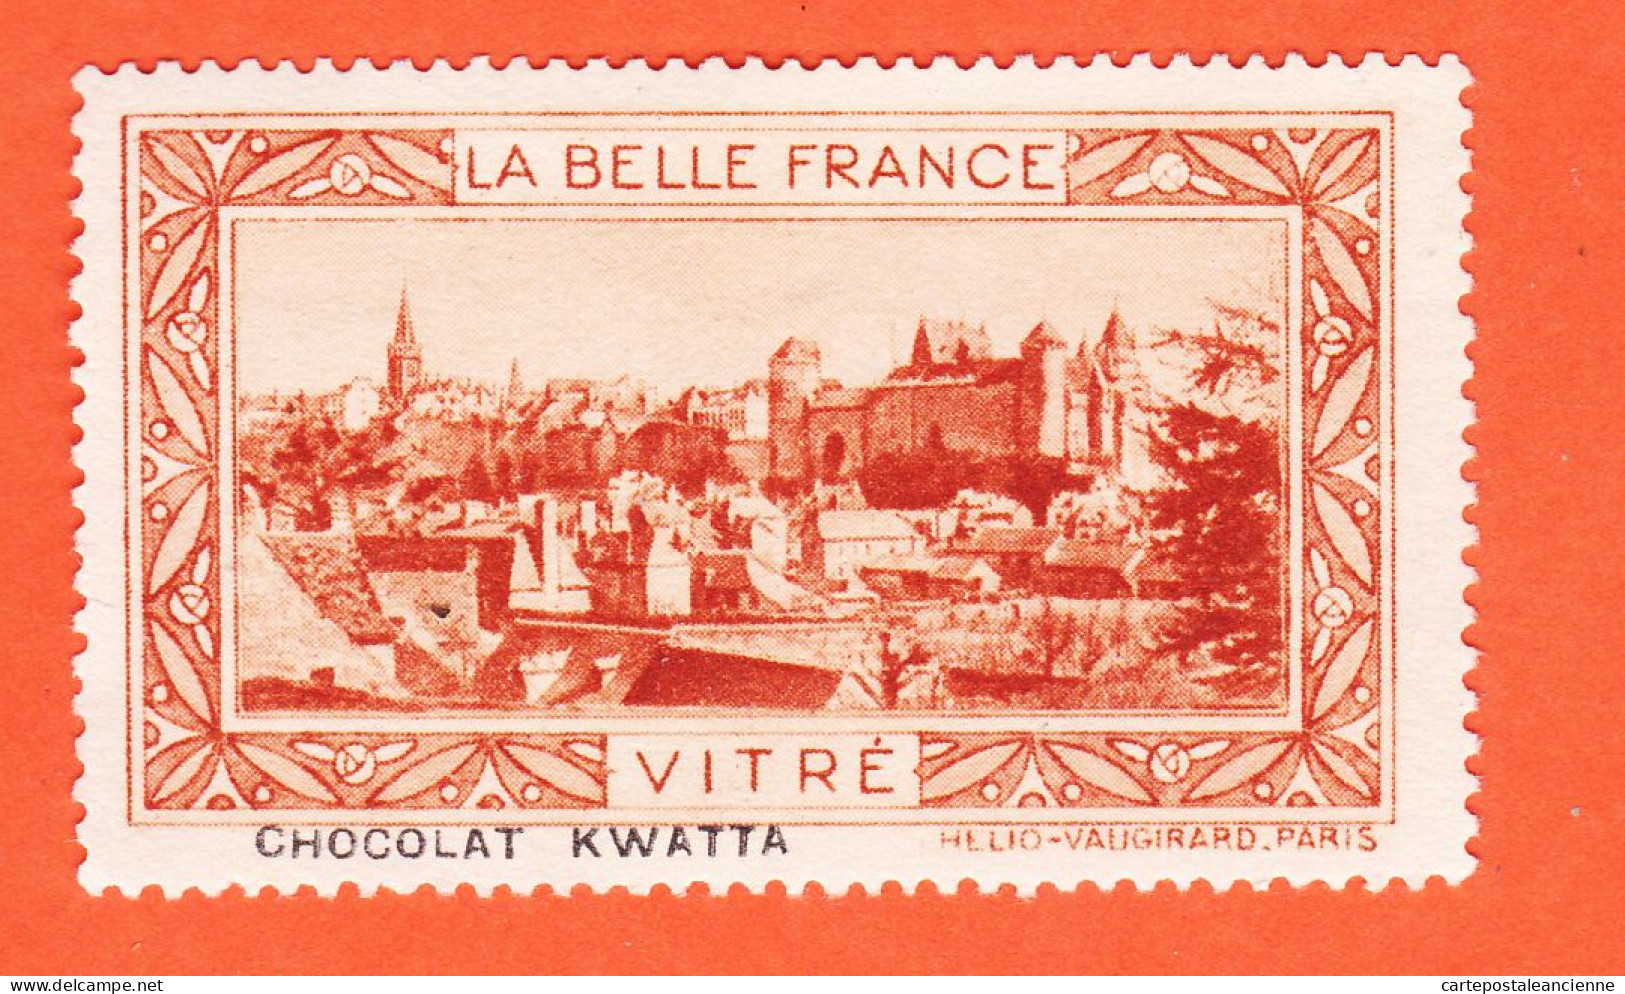 13000 / ⭐ ◉ VITRE (Orange) 35-Ille Vilaine Chateau Chocolat Pub KWATTA Vignette Collection BELLE FRANCE HELIO-VAUGIRARD - Tourisme (Vignettes)